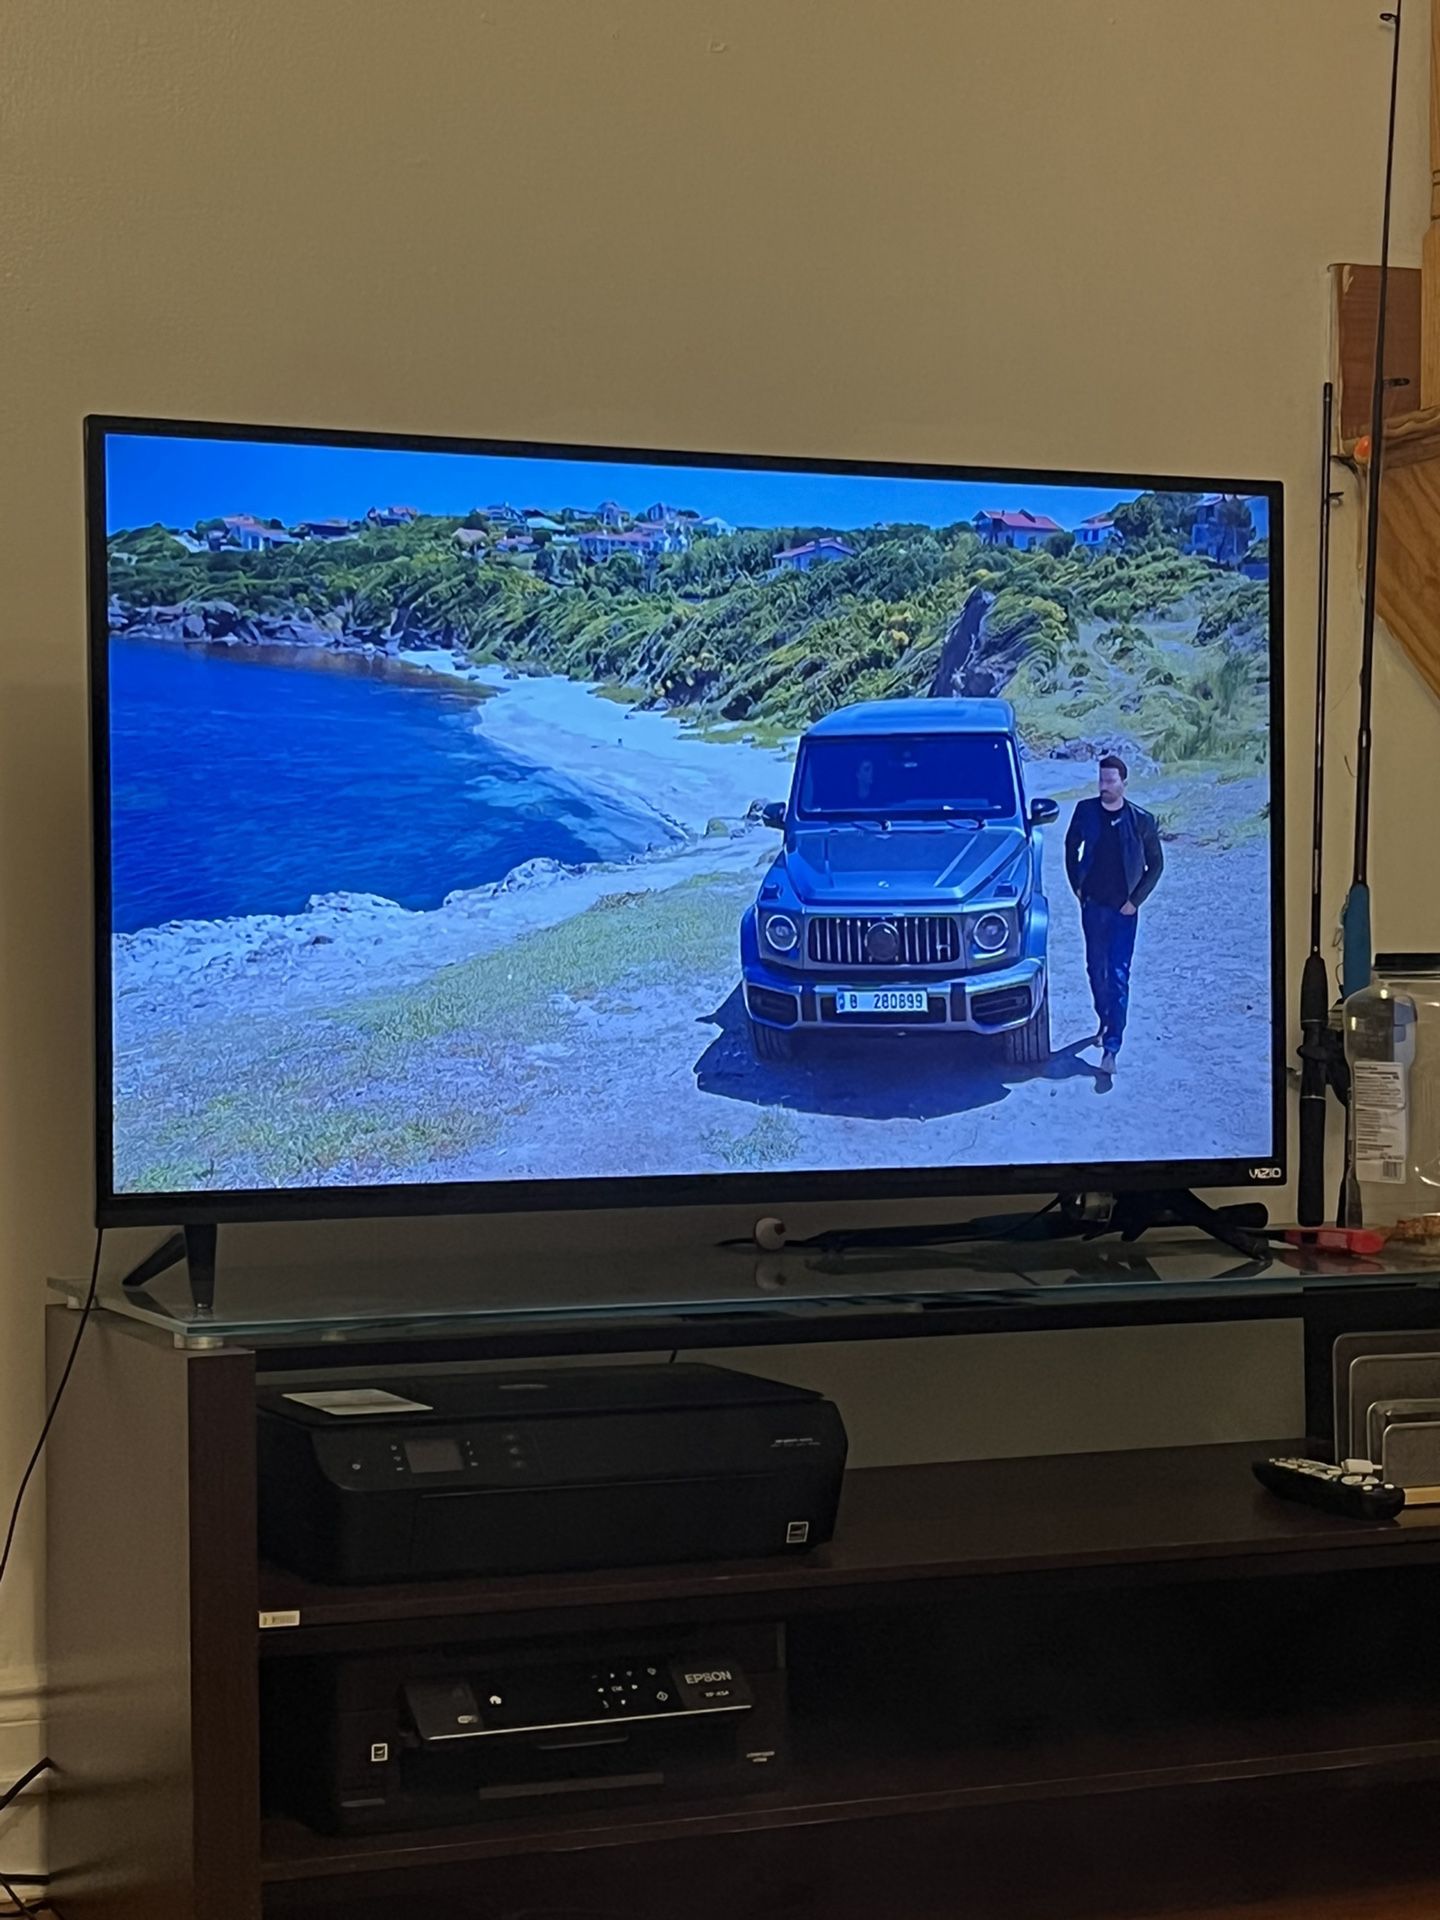 Vizio E-Series 48” Smart TV 1080p Full HD W/ Amazon Fire stick 